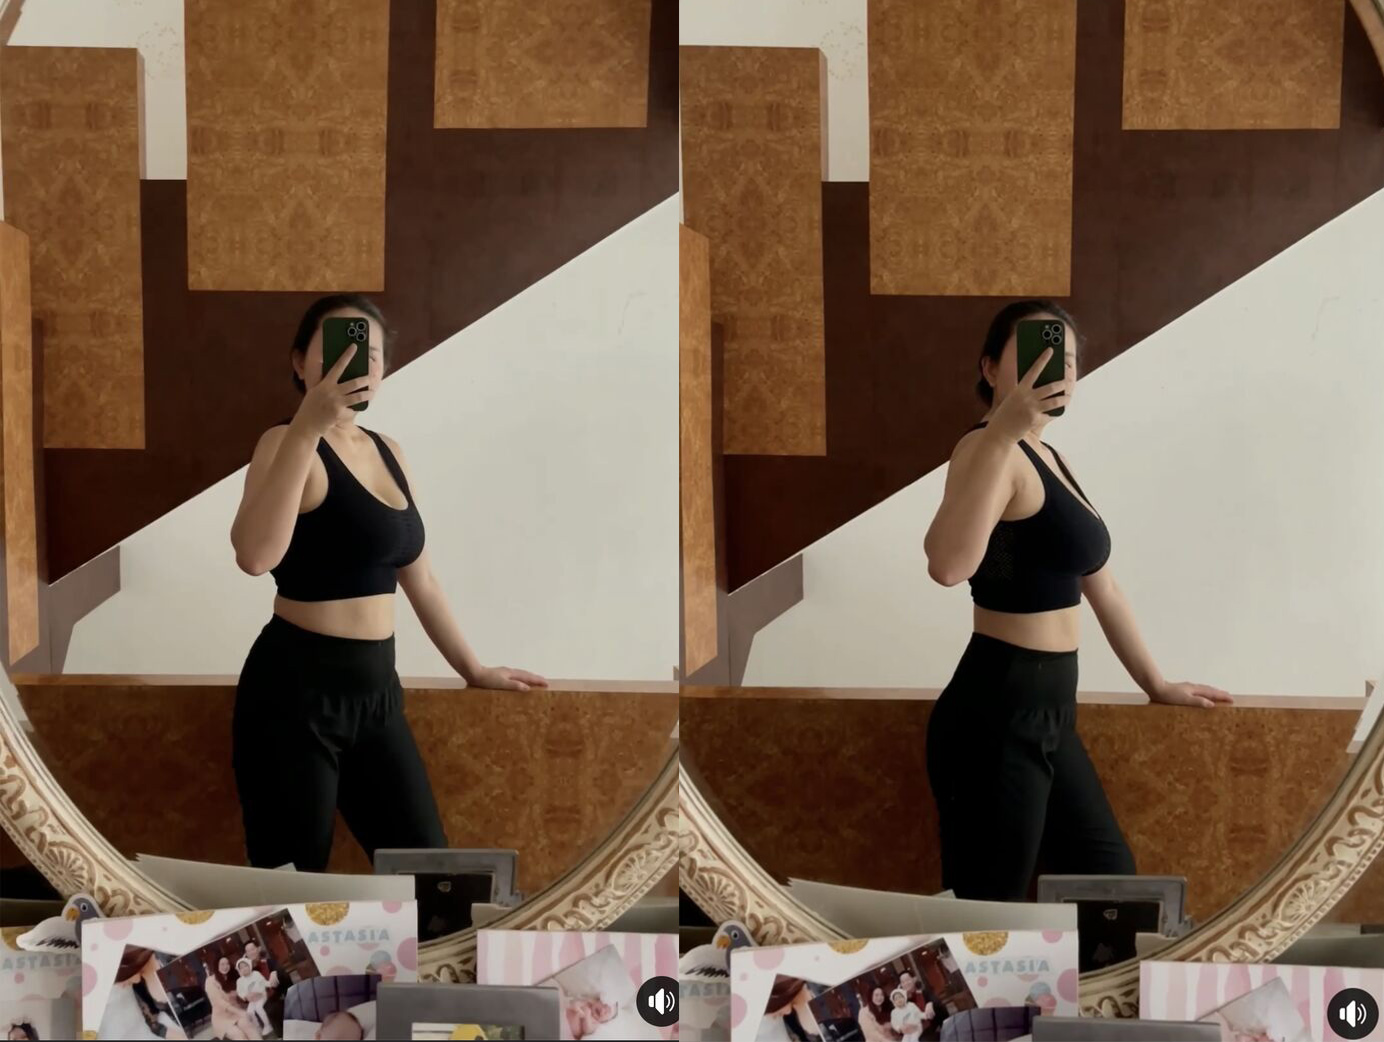 Những bức ảnh selfie trước gương cho thấy Phan Như Thảo đã dần dần lấy lại đường cong chuẩn mực của cơ thể, vòng 2 cũng thon gọn hơn trước.